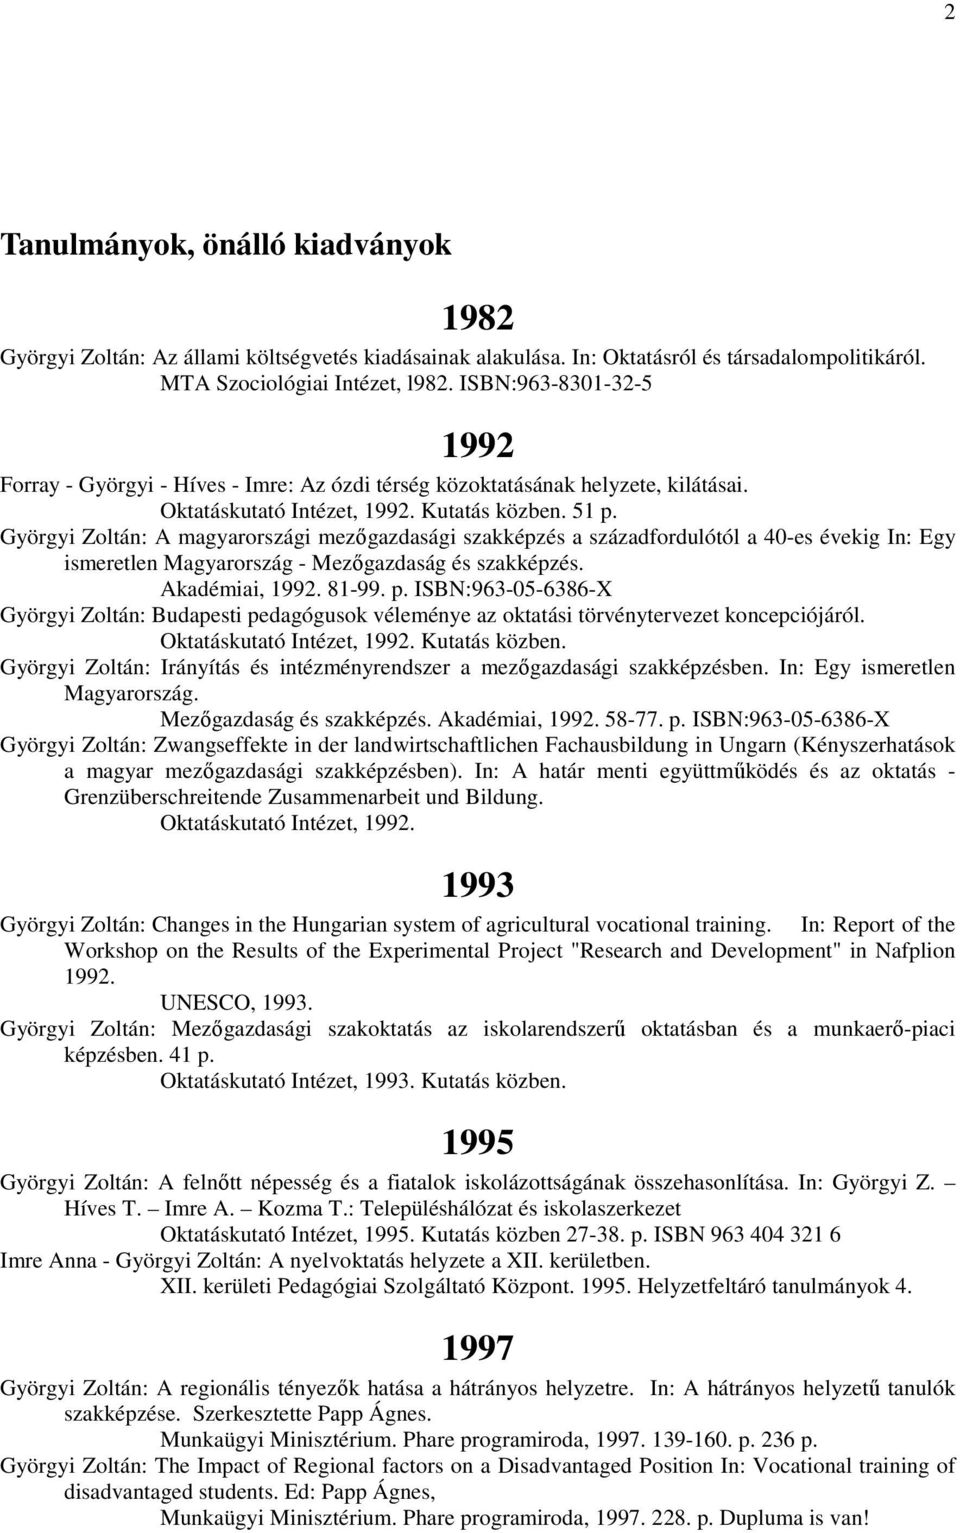 Györgyi Zoltán: A magyarországi mezőgazdasági szakképzés a századfordulótól a 40-es évekig In: Egy ismeretlen Magyarország - Mezőgazdaság és szakképzés. Akadémiai, 1992. 81-99. p.